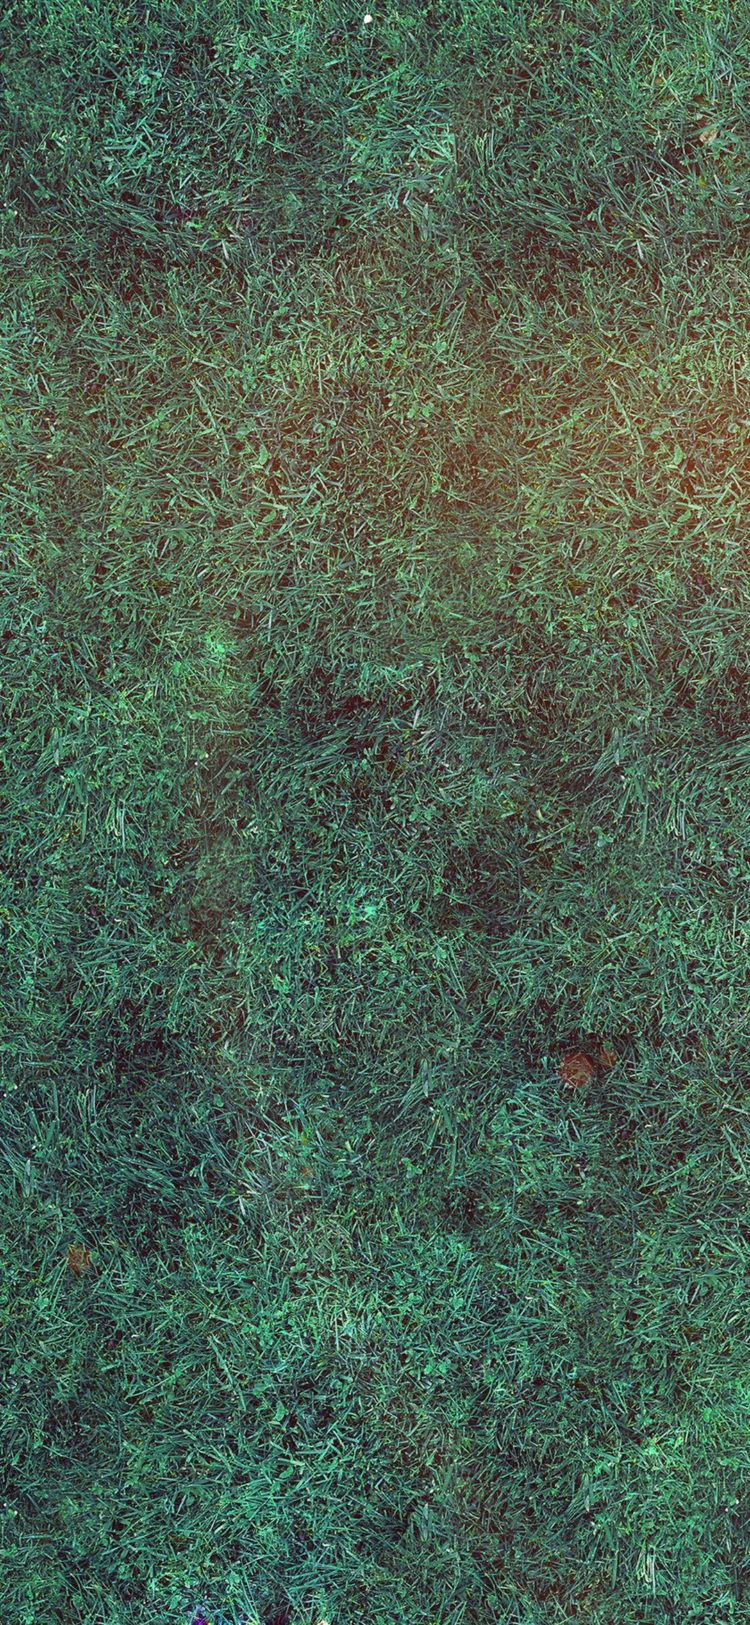 grass texture keyshot